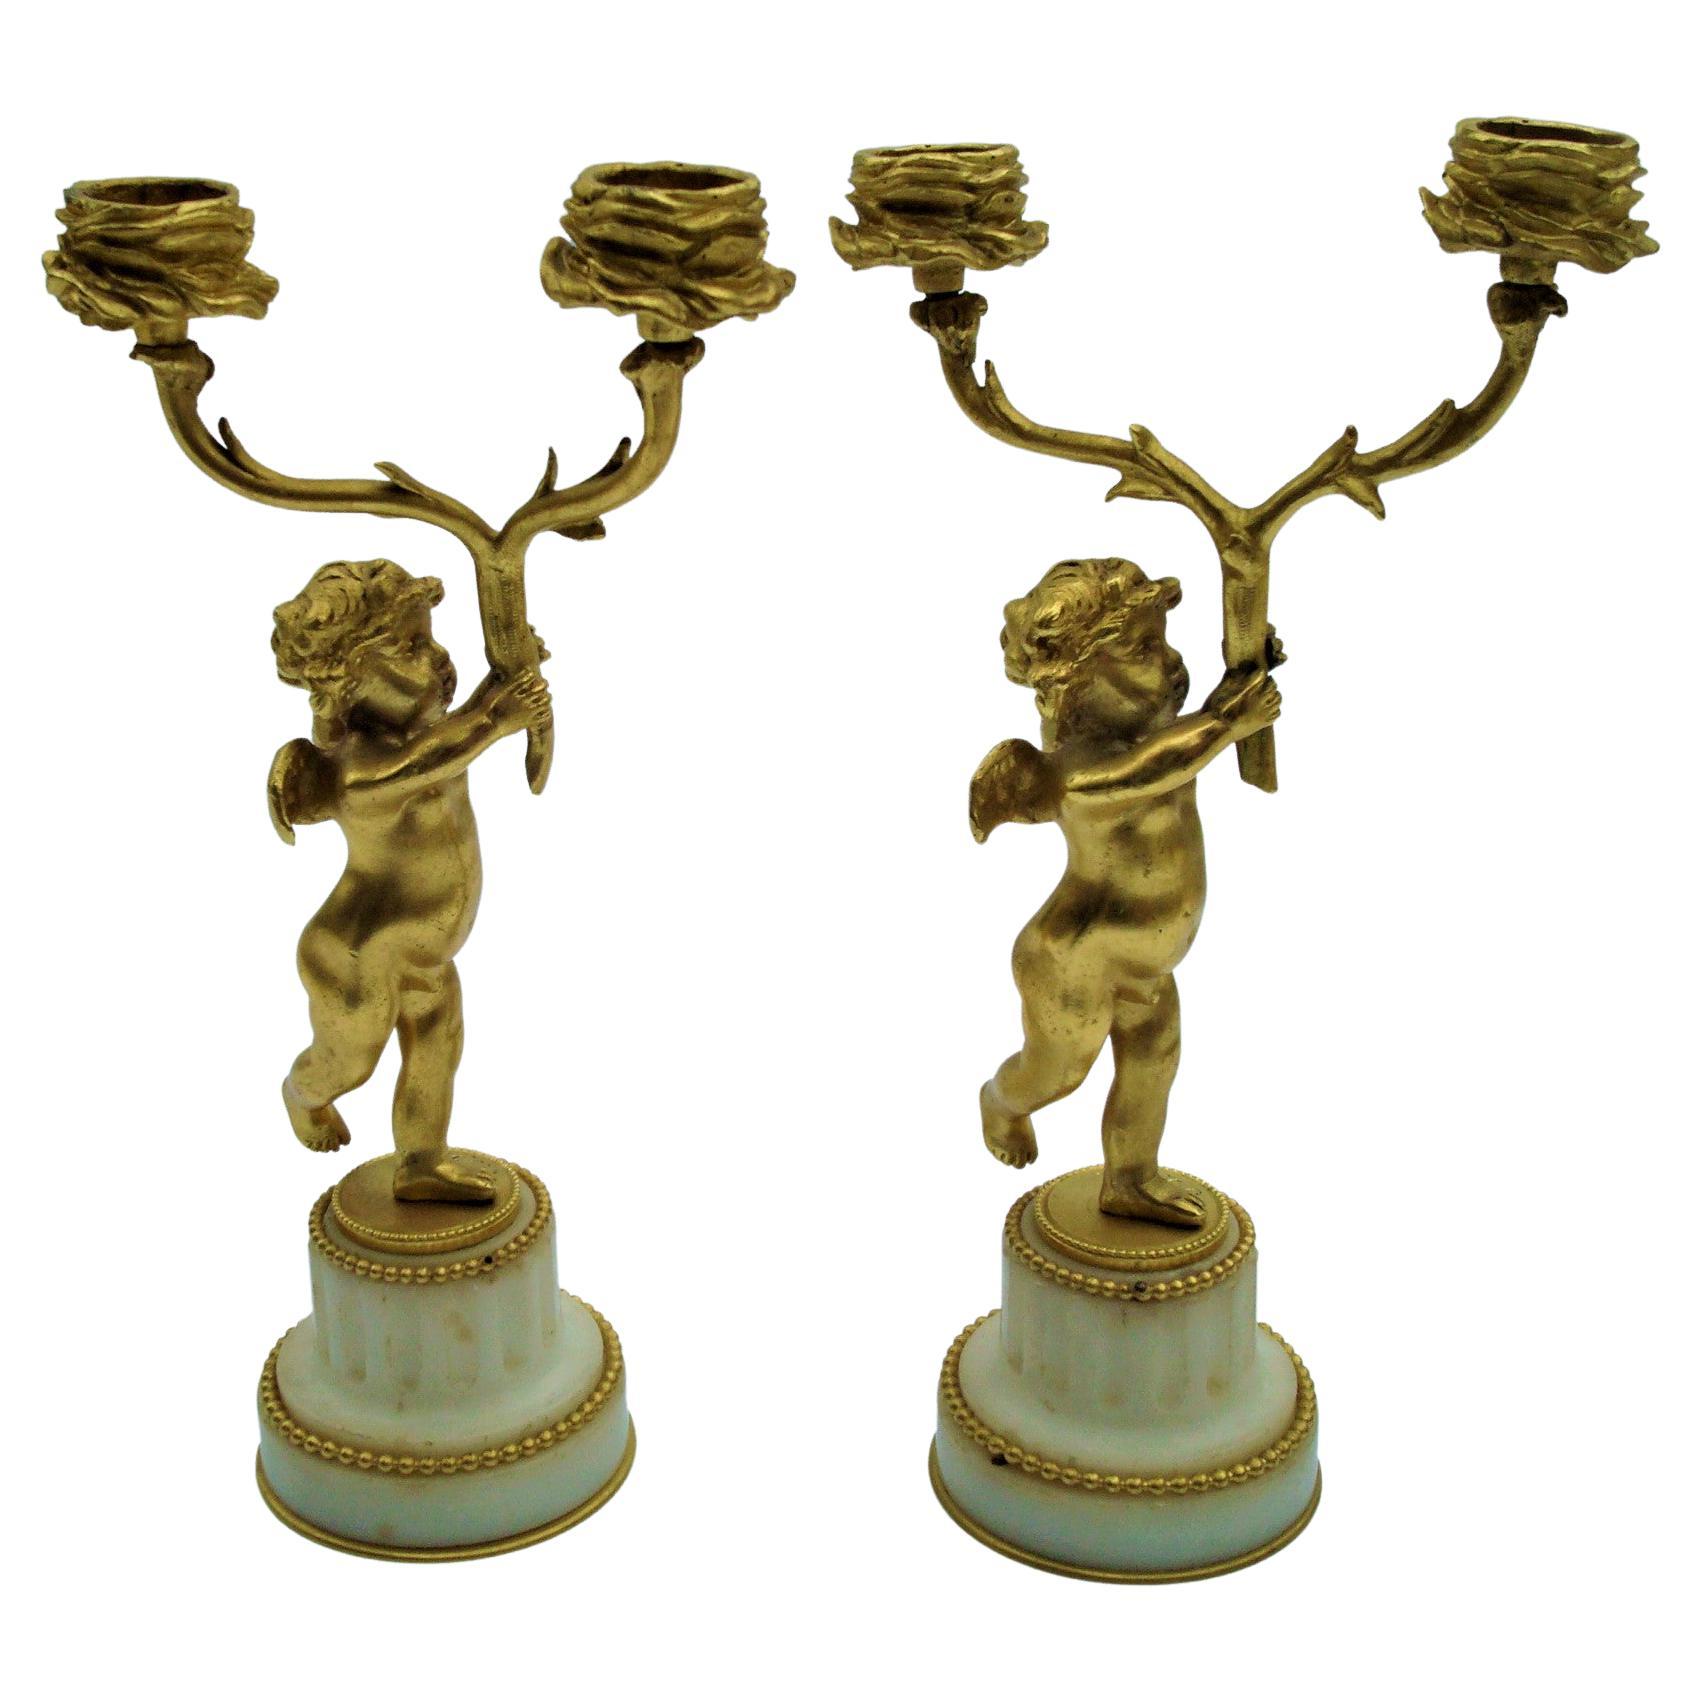 Chandeliers figuratifs à deux bras en bronze et plaqué or représentant un chérubin, F. Linke, XIXe siècle